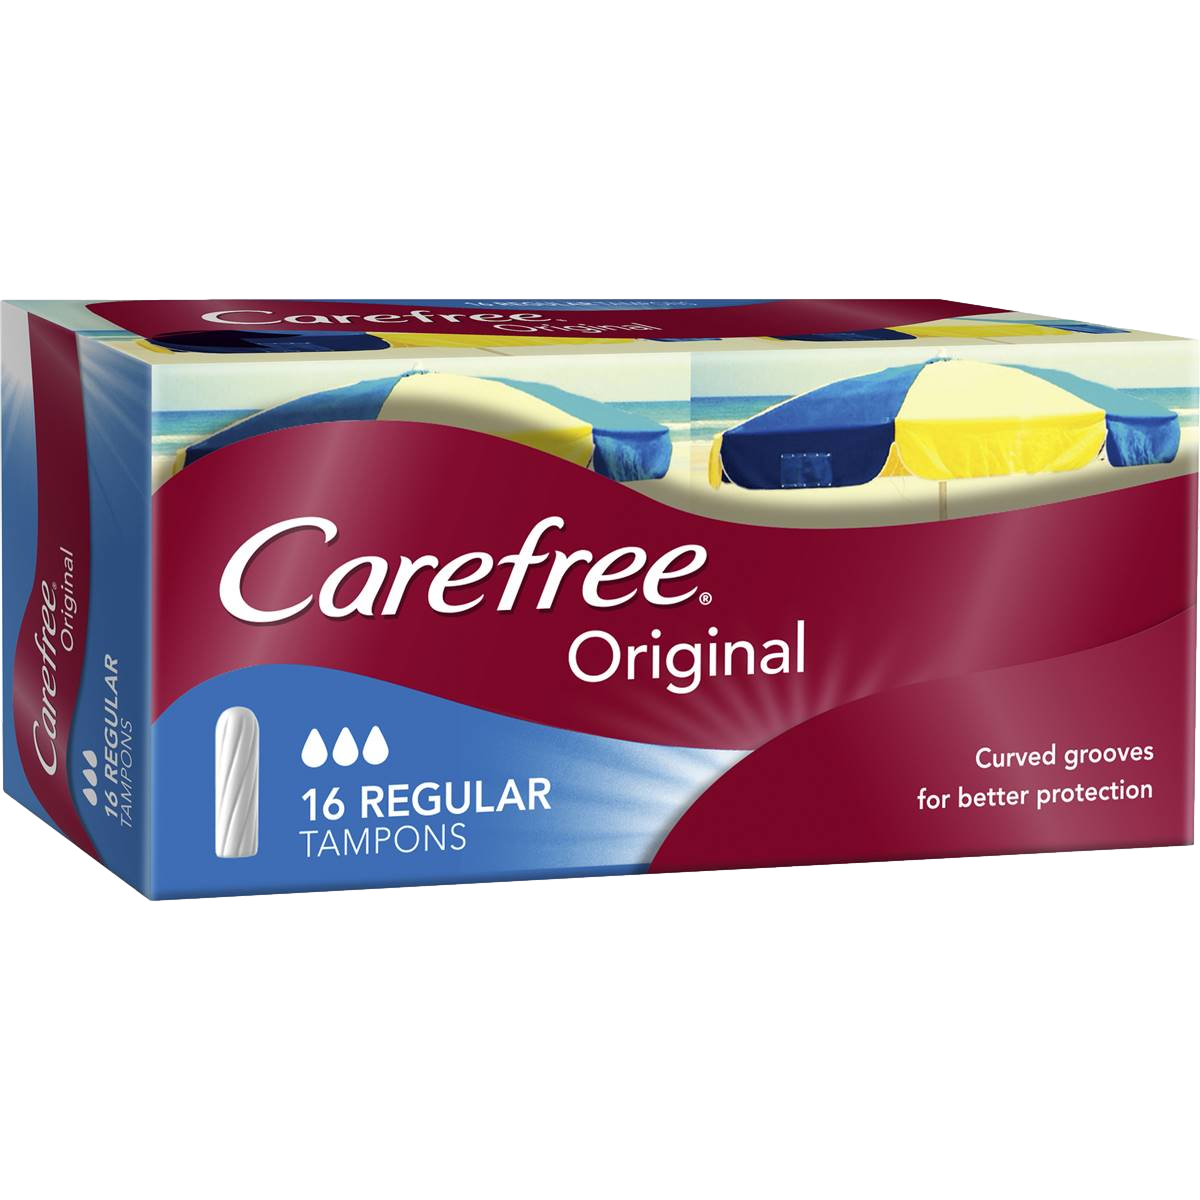 Carefree Tampons Regular Original 16 Pack